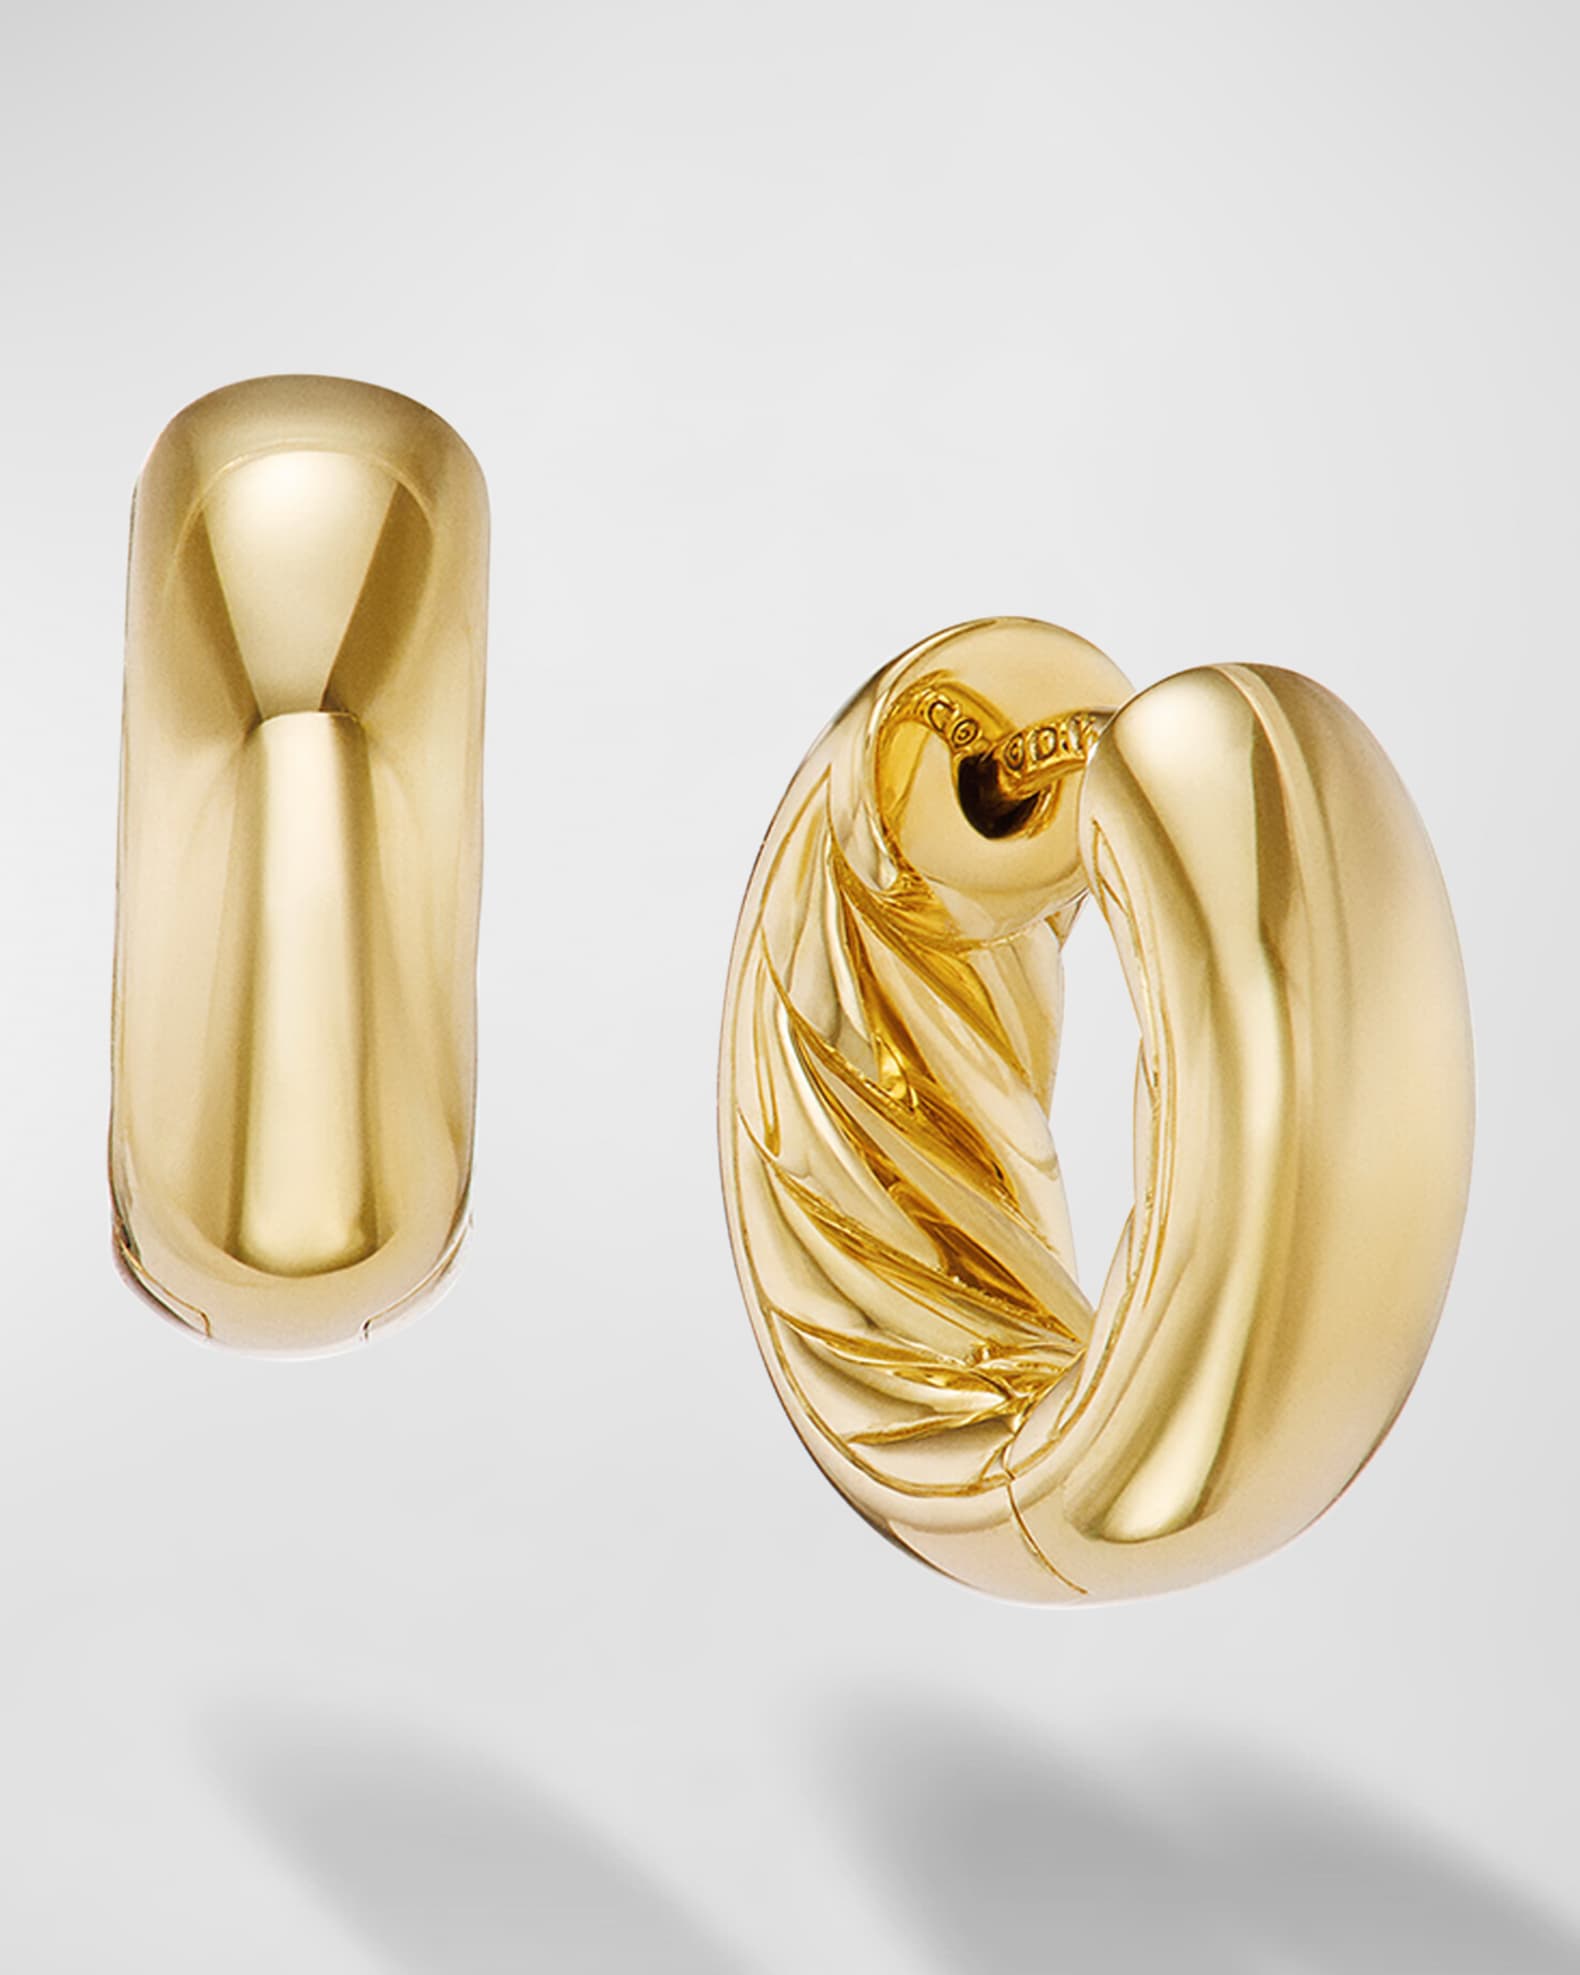 D Wire Hoop Earrings in Gold - 3 ½